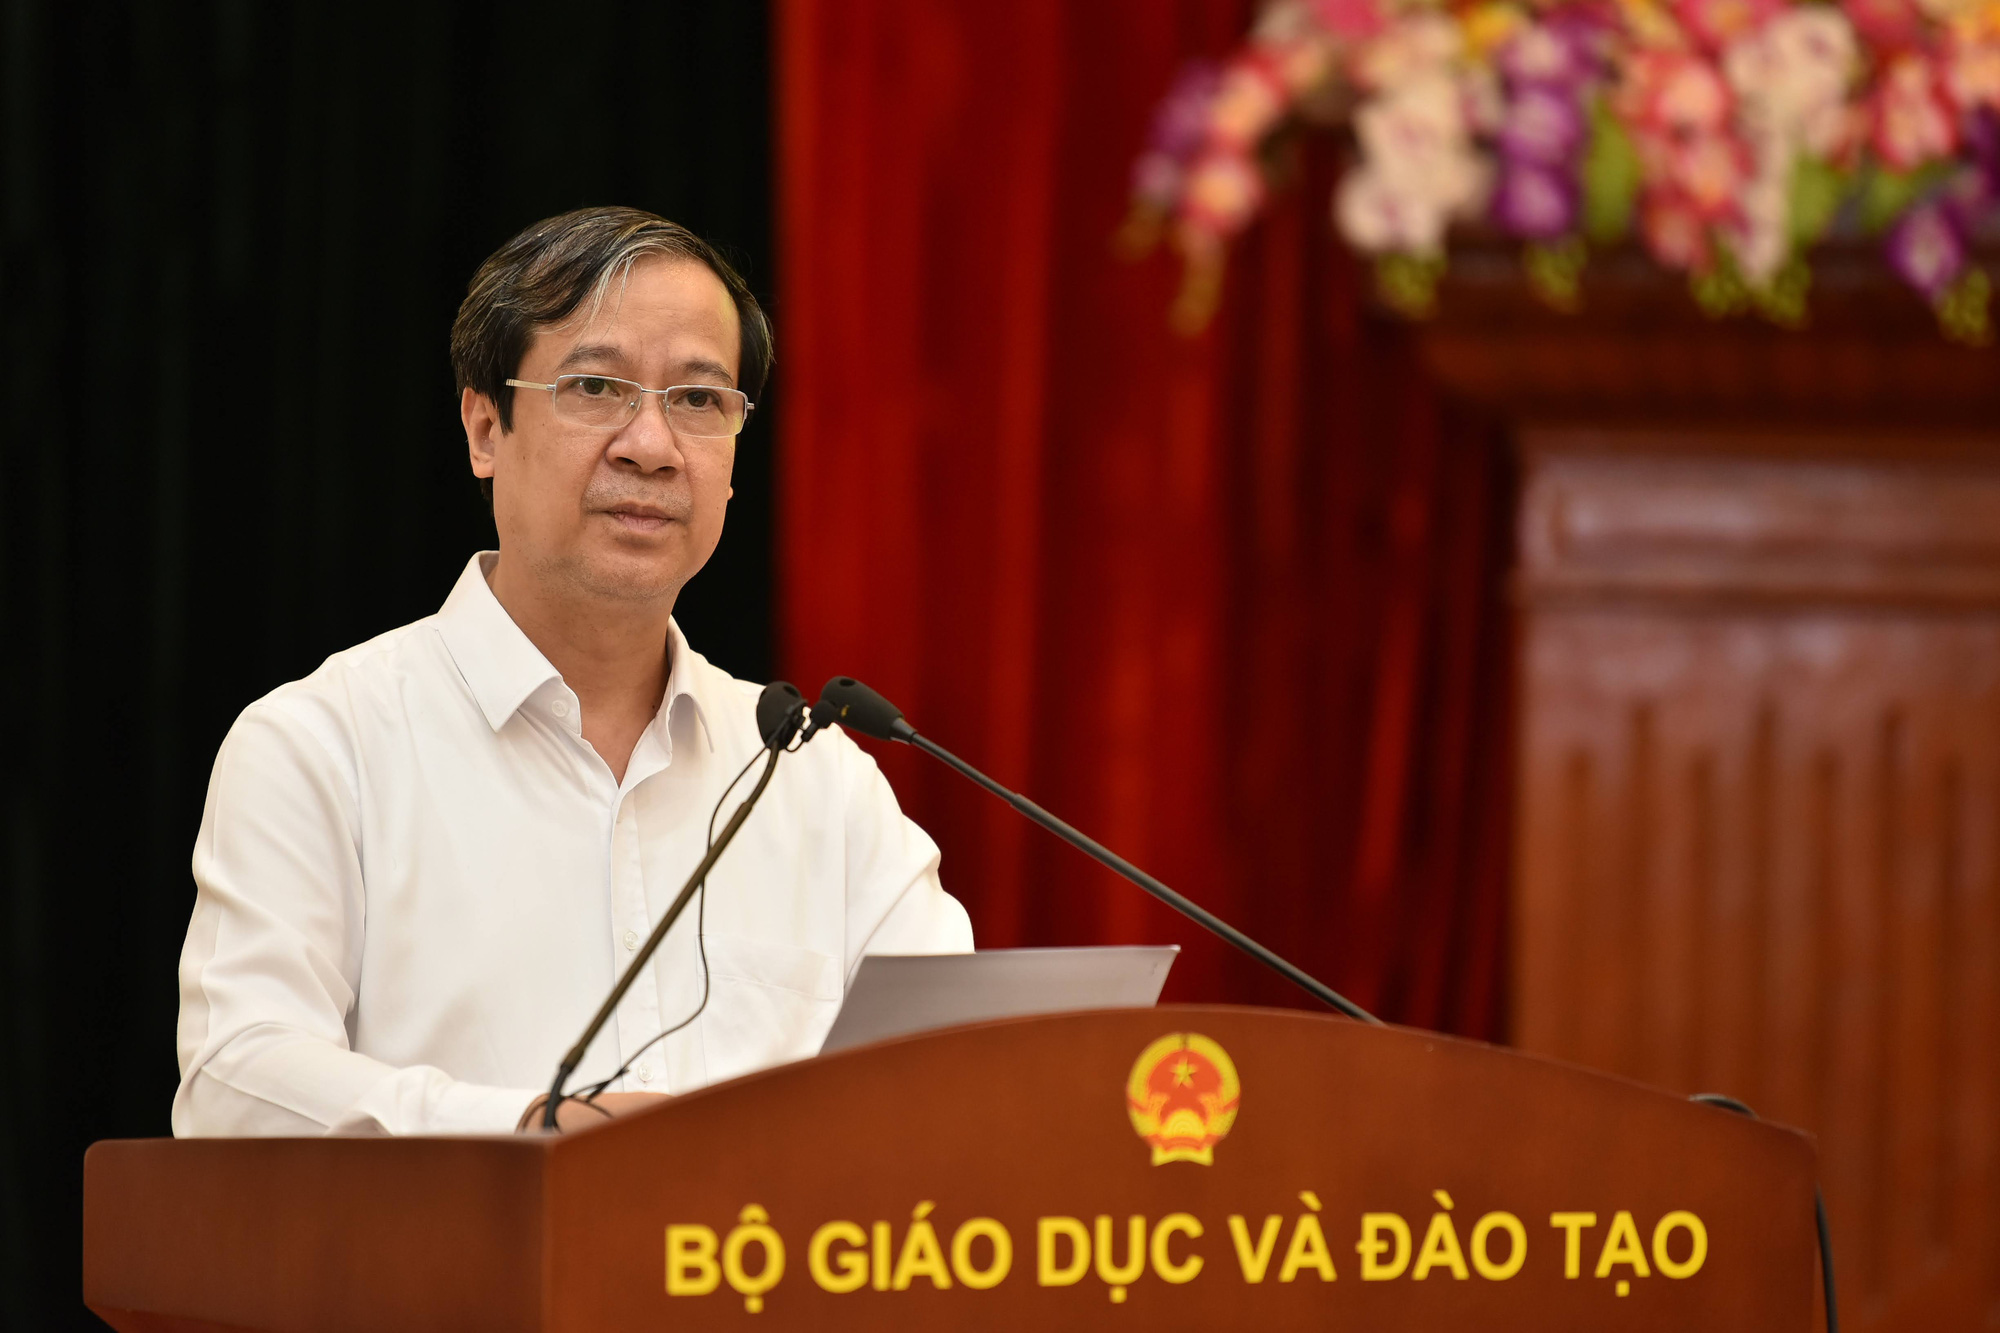 Nhiều vấn đề &quot;nóng&quot; trong giáo dục, Bộ trưởng GDĐT Nguyễn Kim Sơn trả lời thế nào trước Quốc hội? - Ảnh 1.